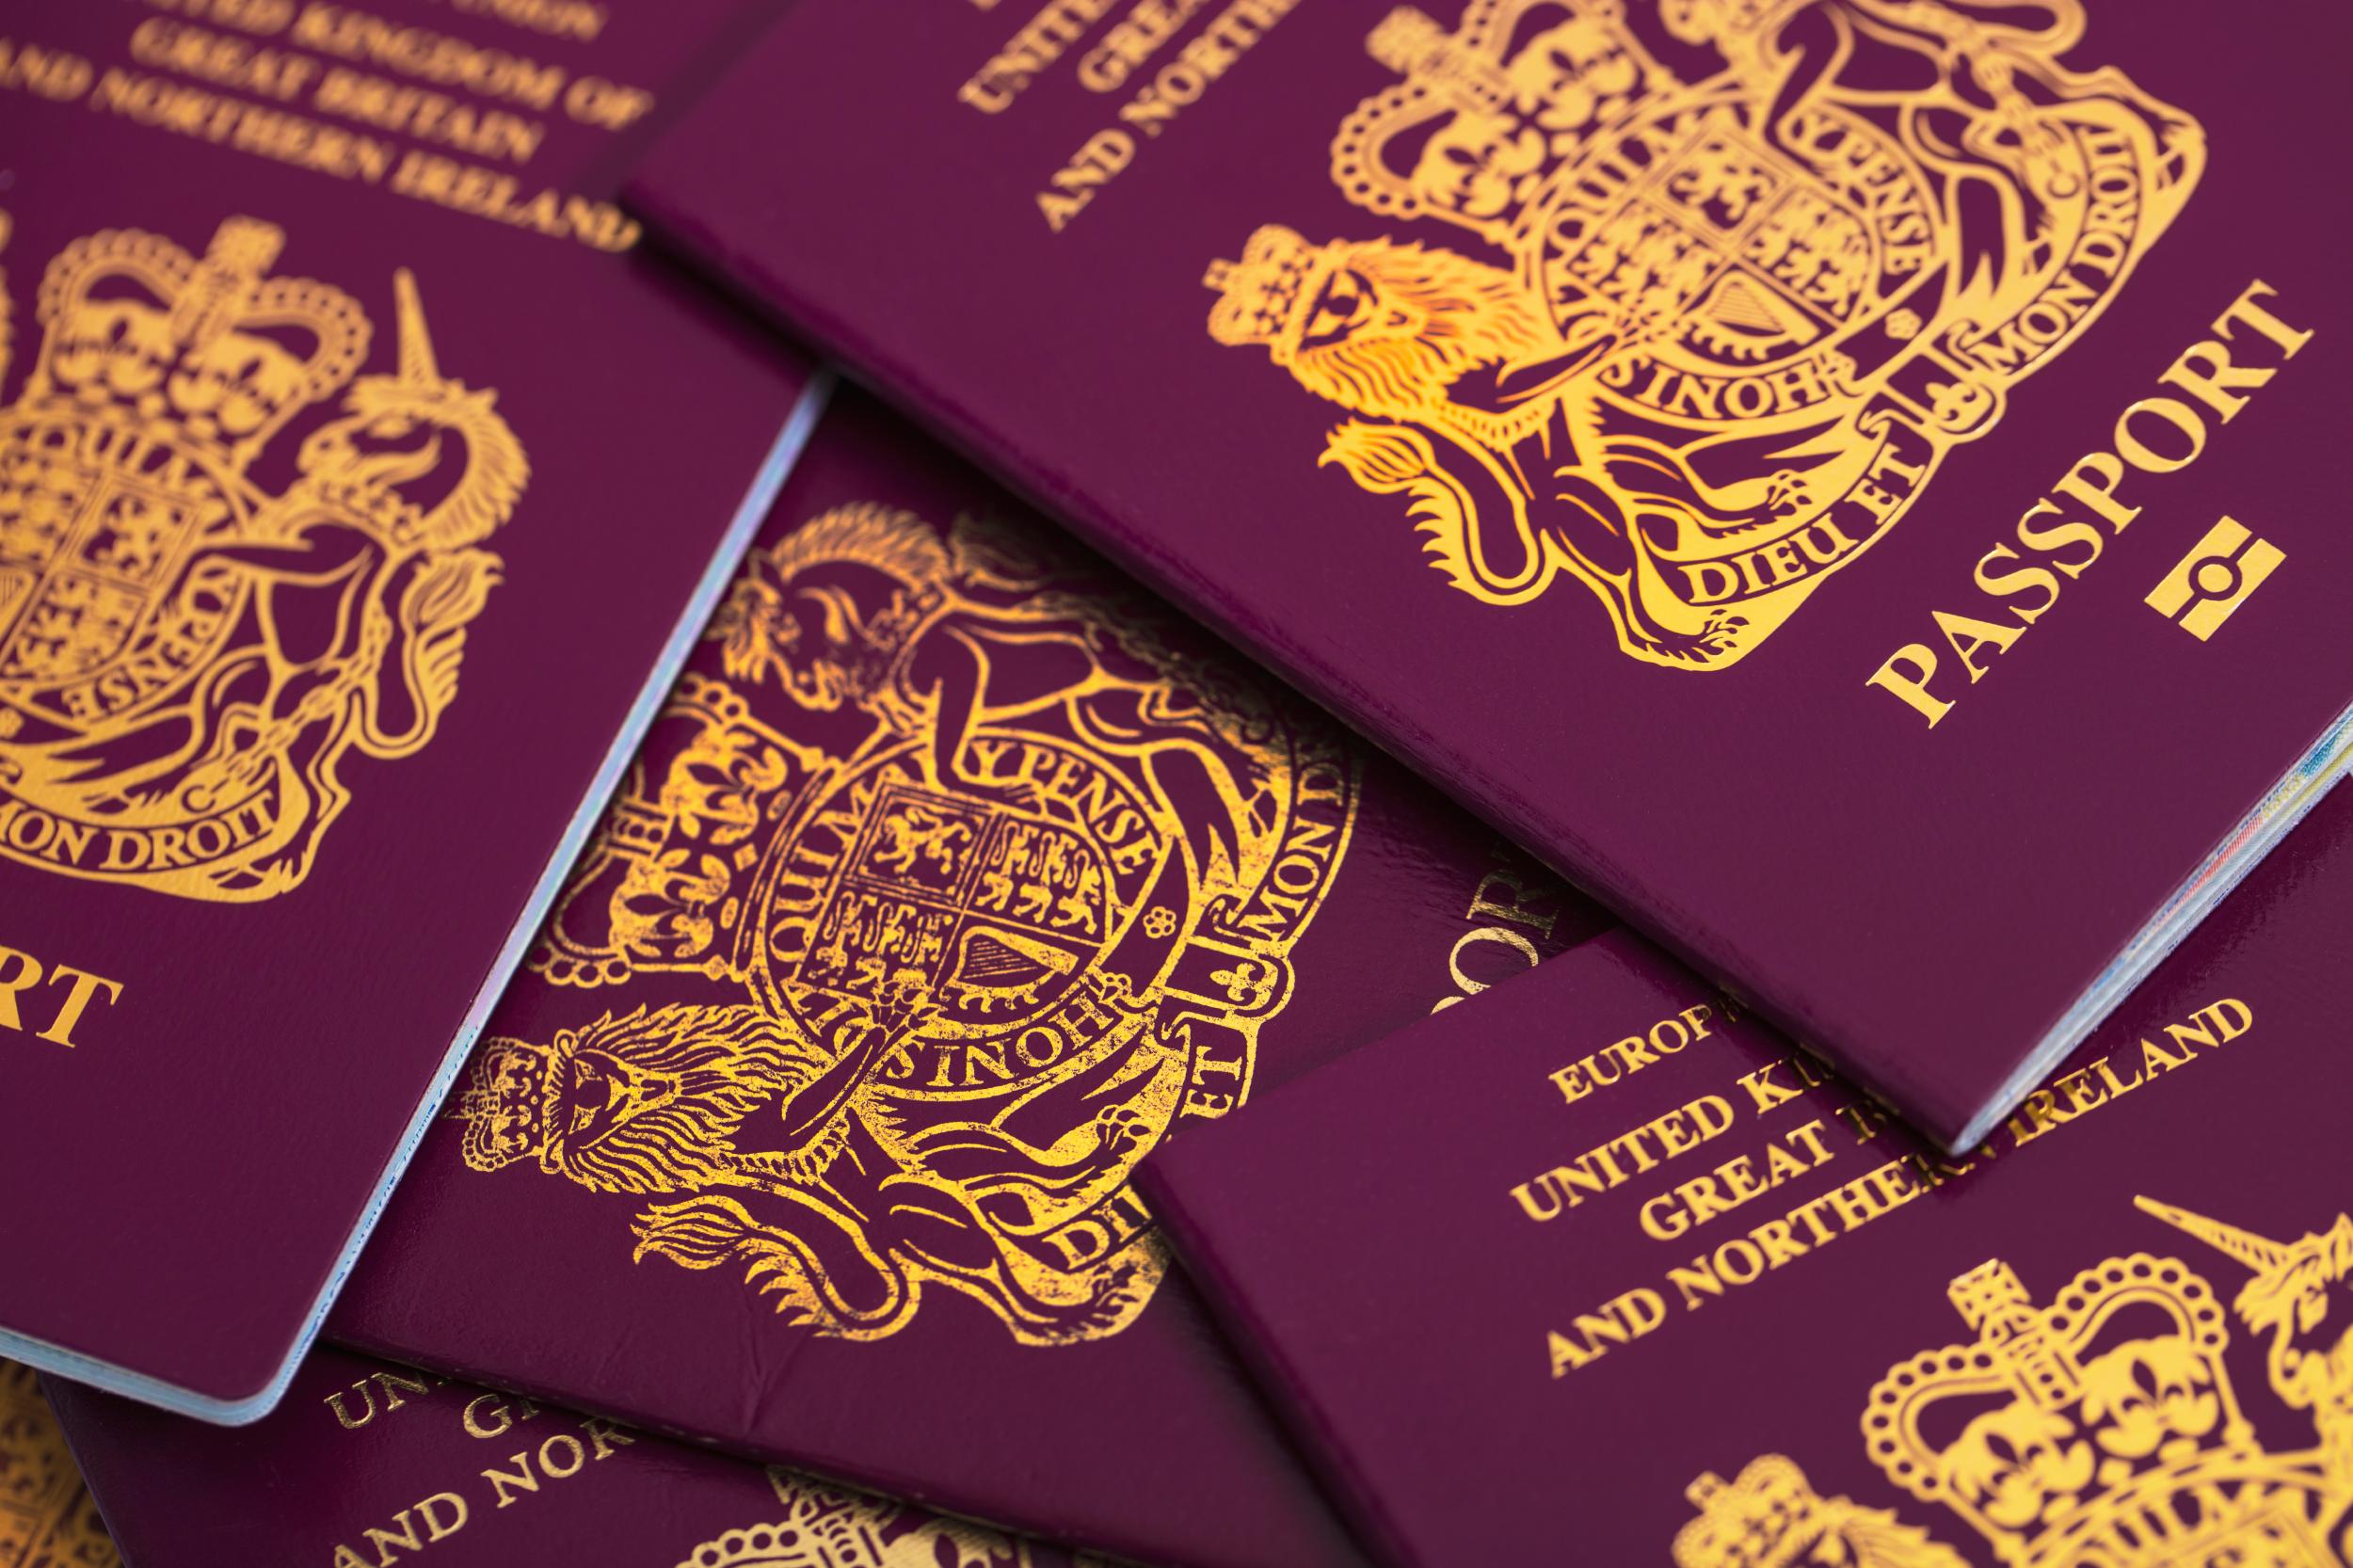 Έρχεται το οριστικό BREXIT στις 12 Απριλίου: Η Βρετανία τυπώνει νέα διαβατήρια χωρίς την ένδειξη ΕΕ!